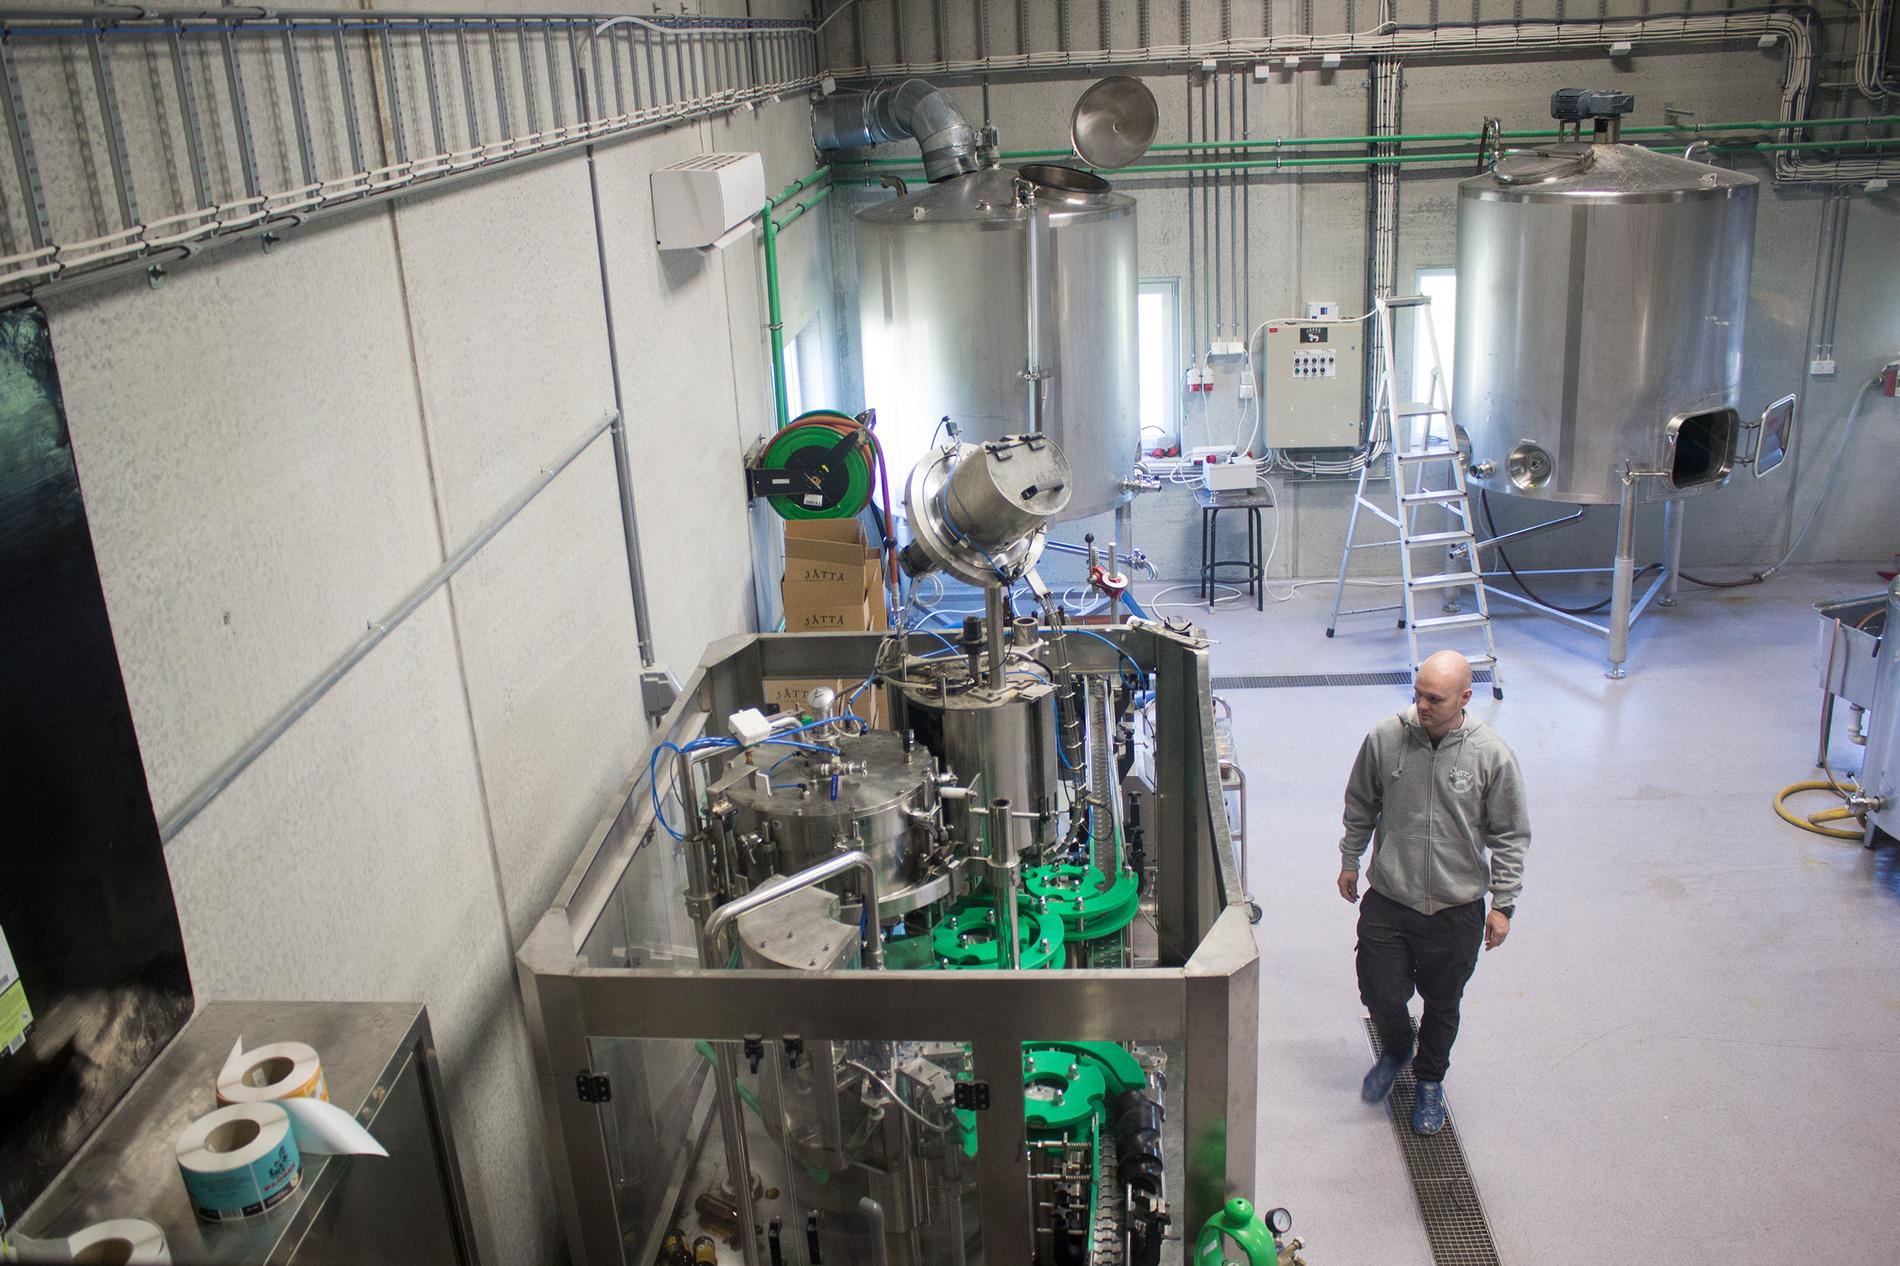 Rett bak bryggeriutsalget er produksjonslokalene. I fjor brygget Jåttå Gårdsbryggeri 30.000 liter øl i disse lokalene. I år er målet over 40.000 liter. 